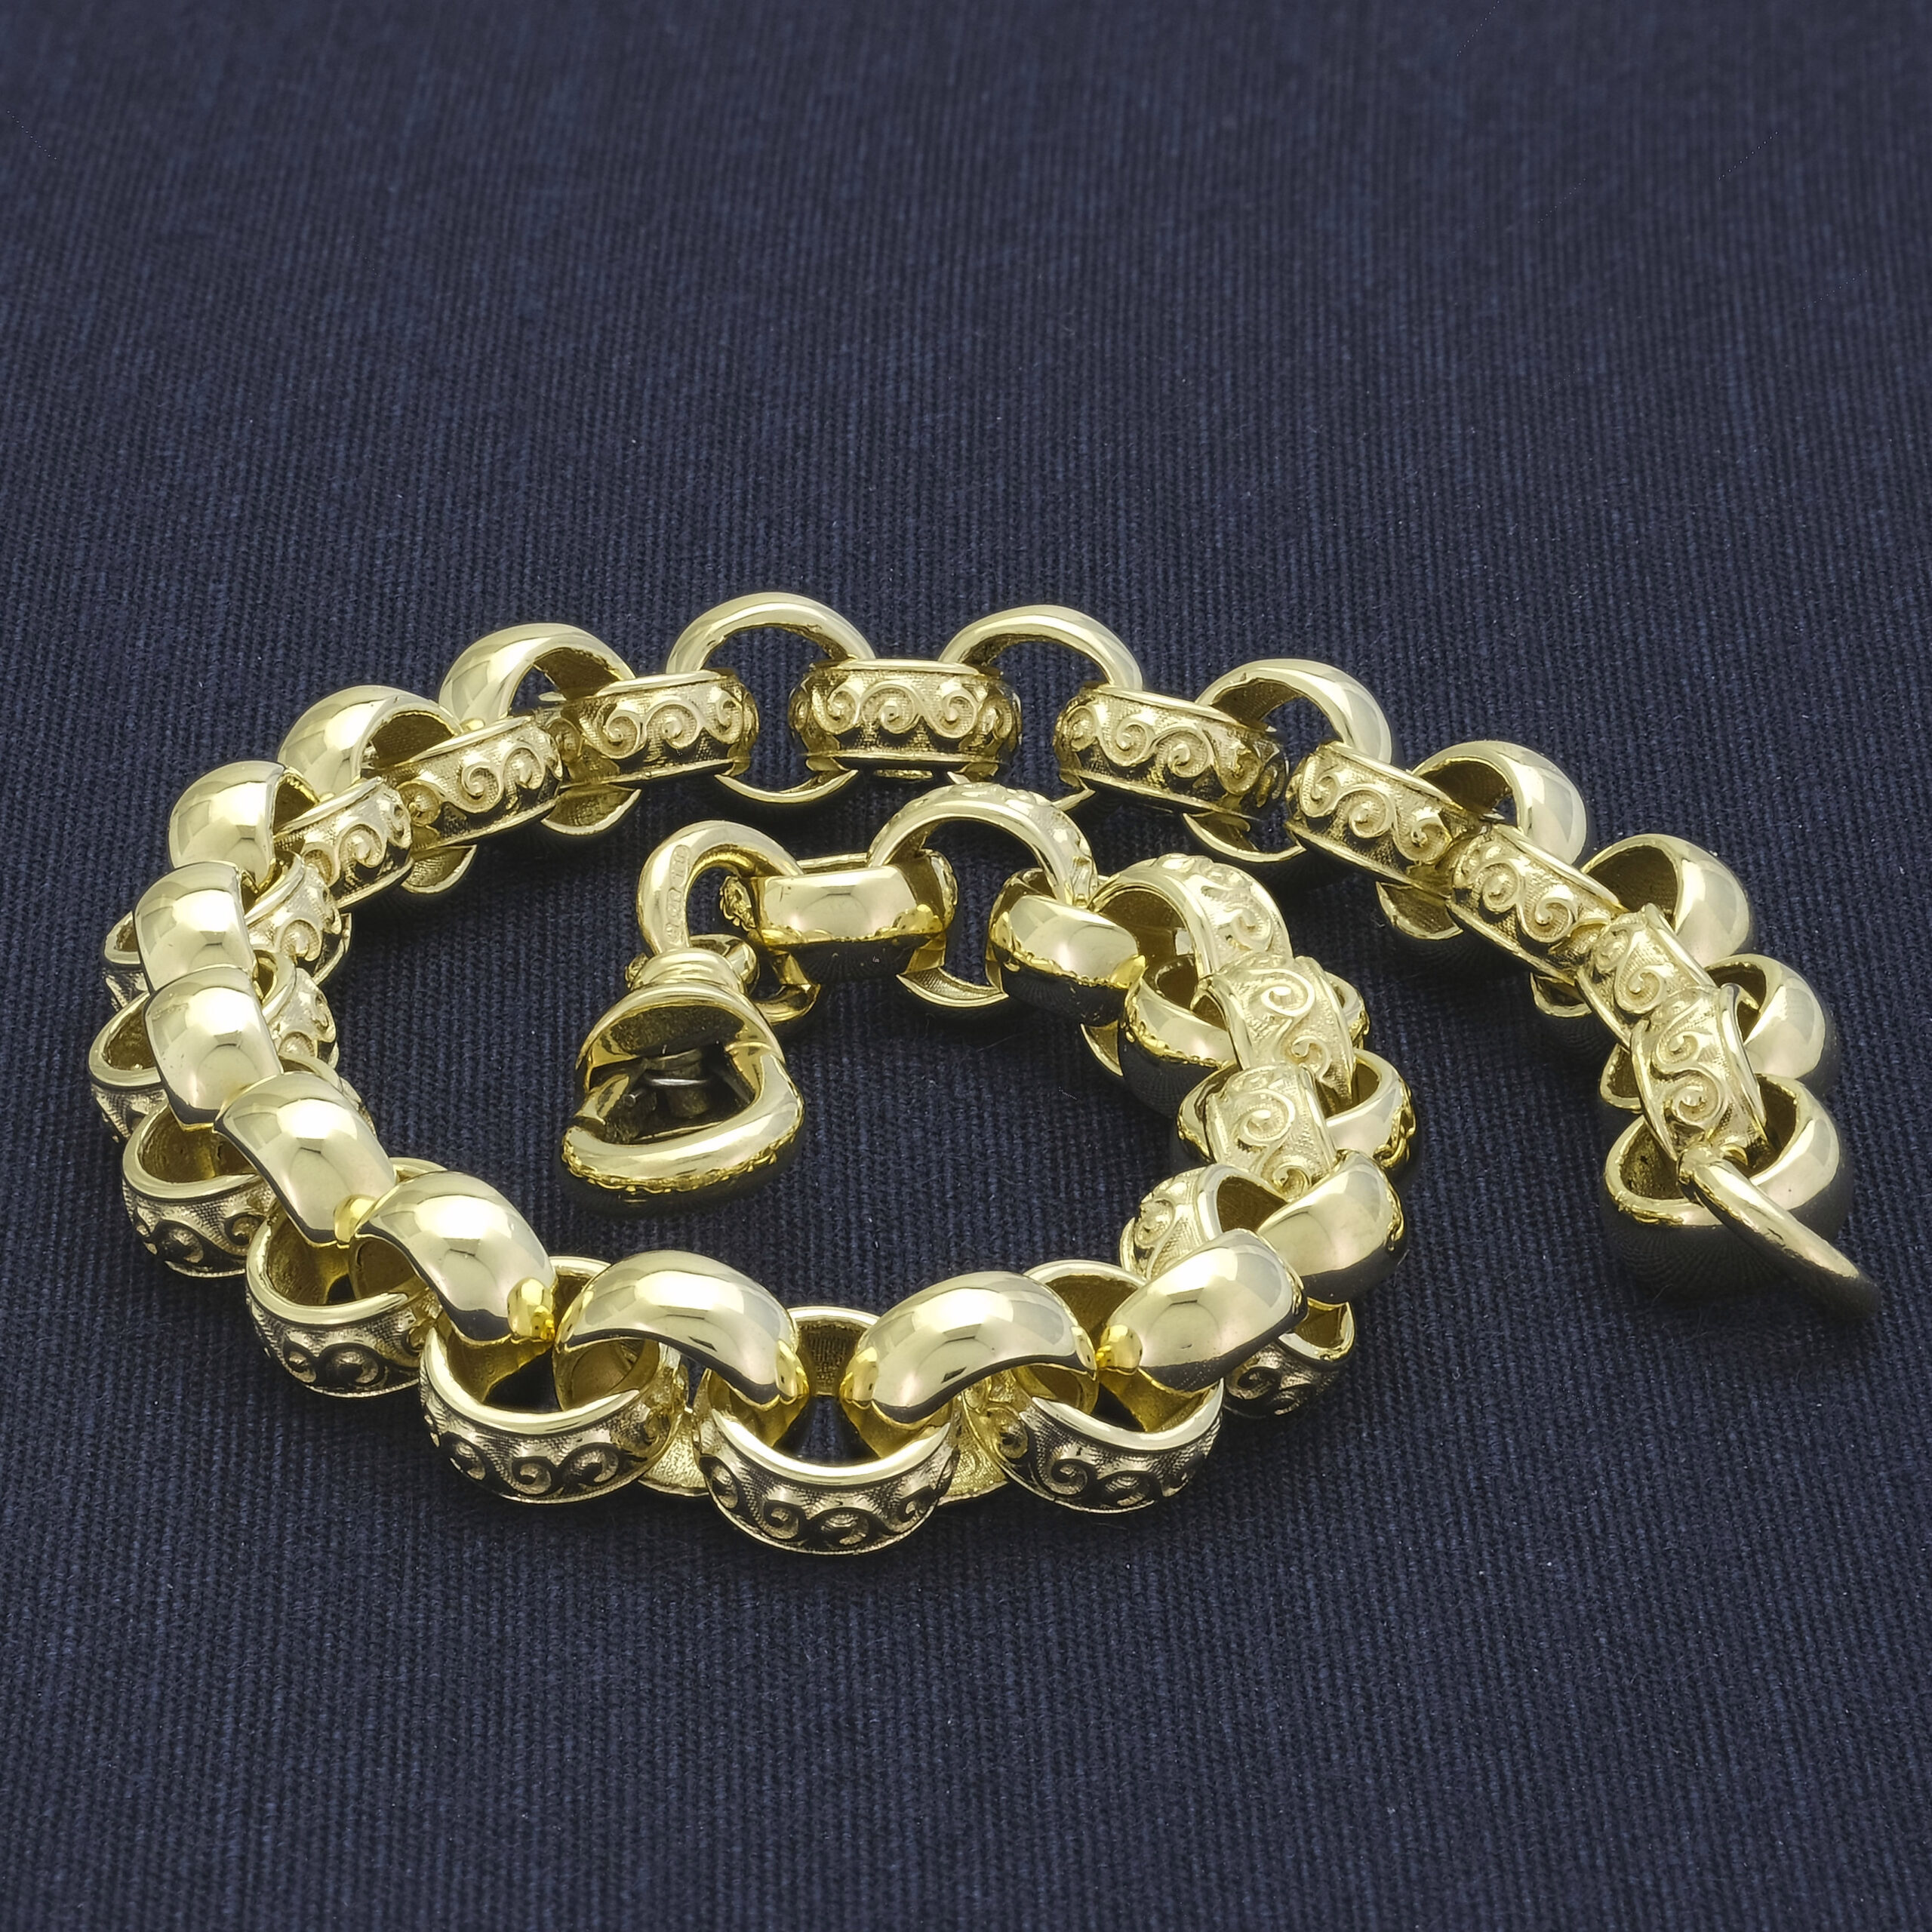 1500 Big 9ct Belcher chain 68 gram... - S.C Gold & Watches | Facebook